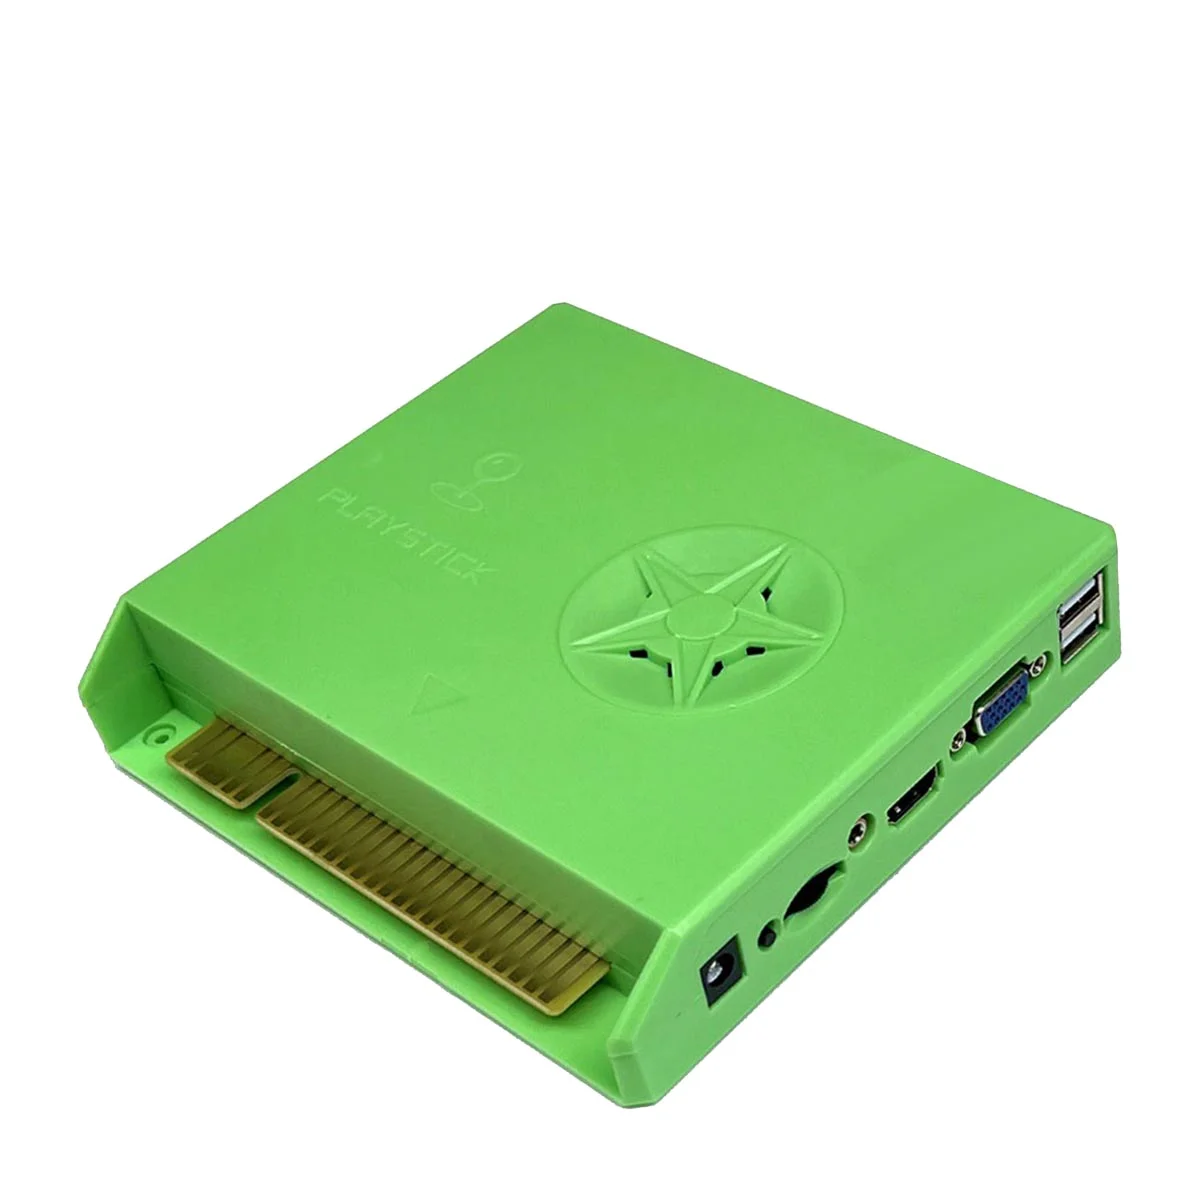 

5000 в 1 DX специальная аркадная игровая консоль Jamma материнская плата для Pandora Сага Box DX Special HD VGA